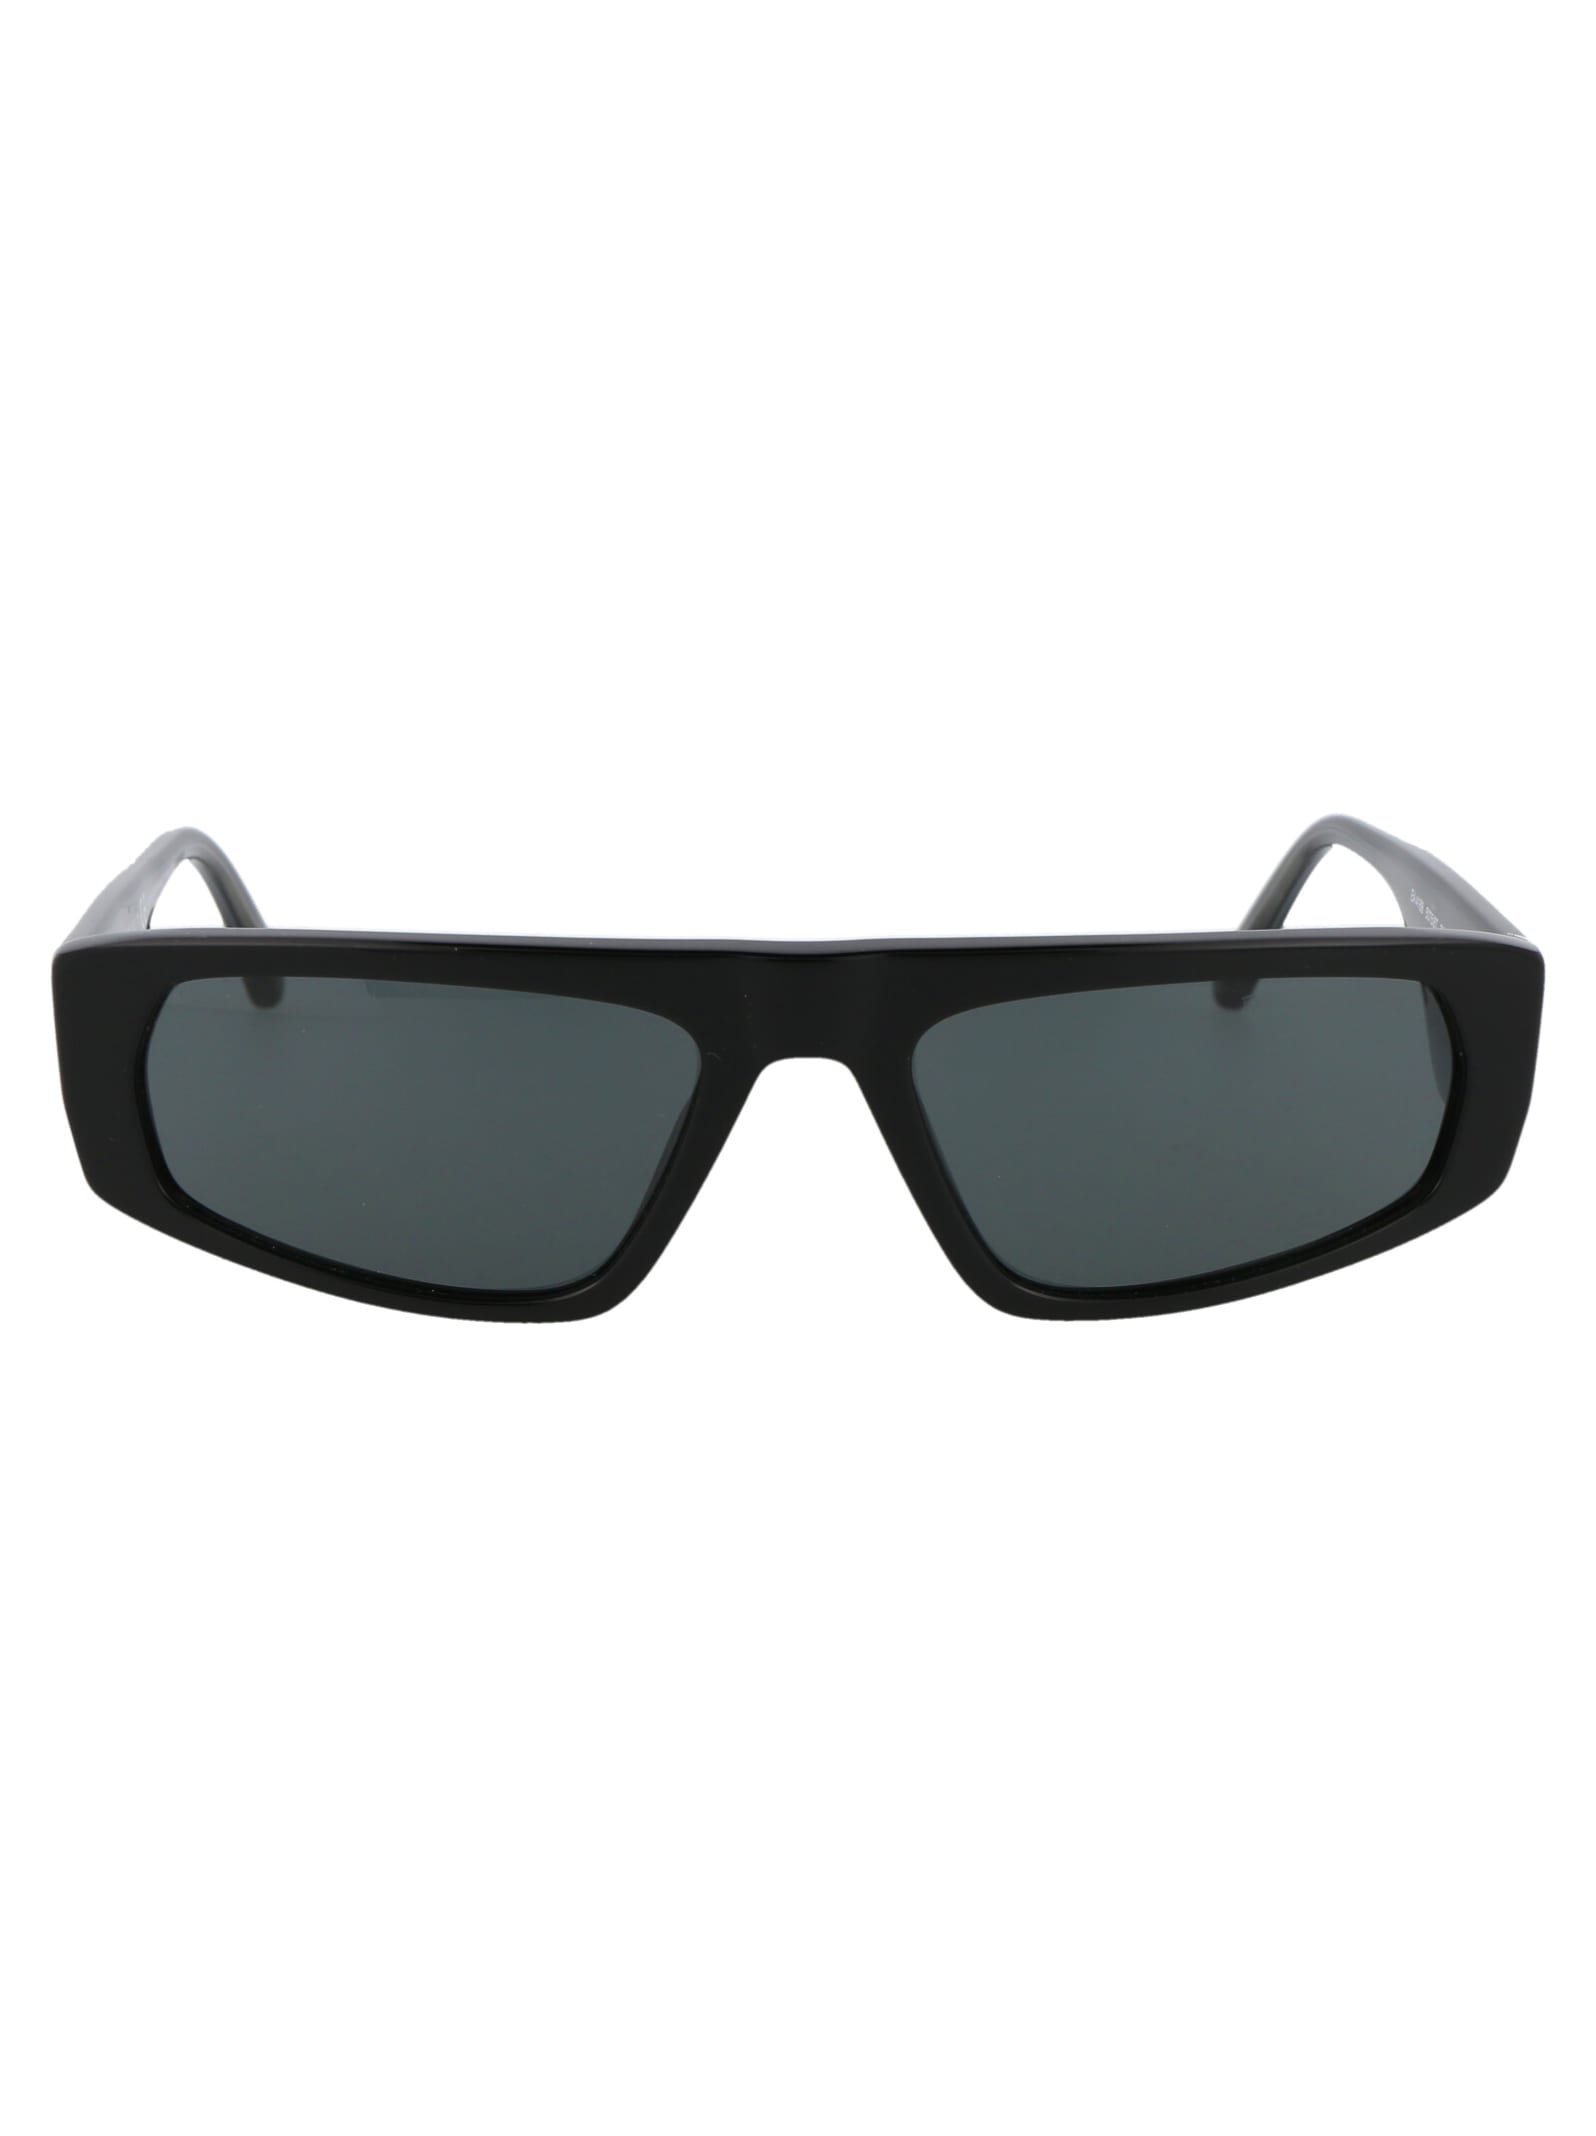 Emporio Armani 0ea4168 Sunglasses